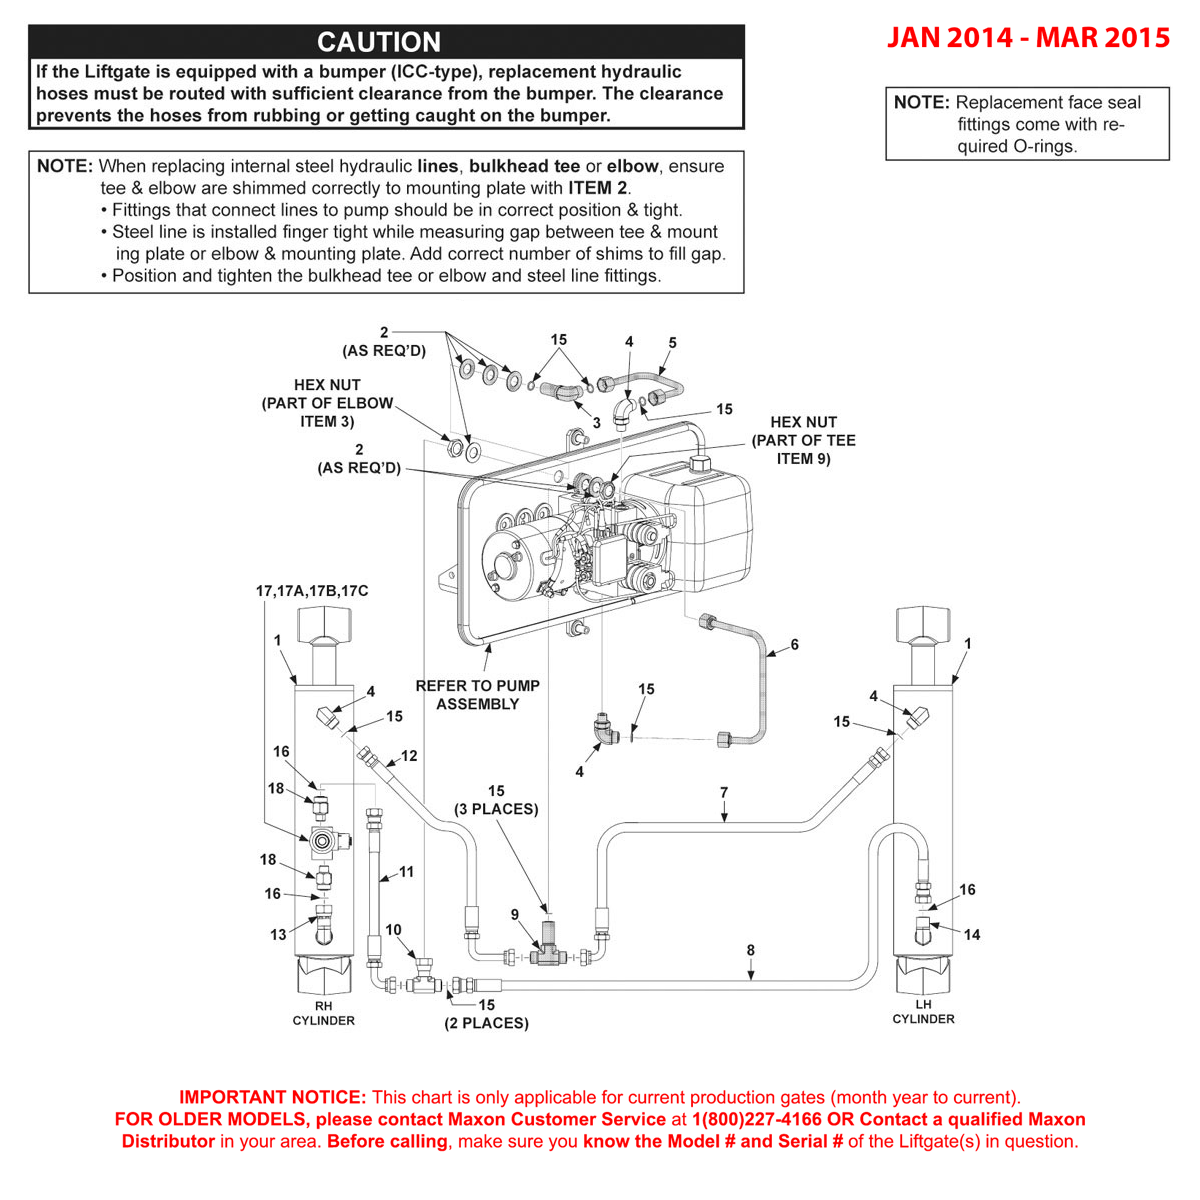 Maxon GPT (Jan 2014 - Mar 2015) Power Down Hydraulic Components Diagram